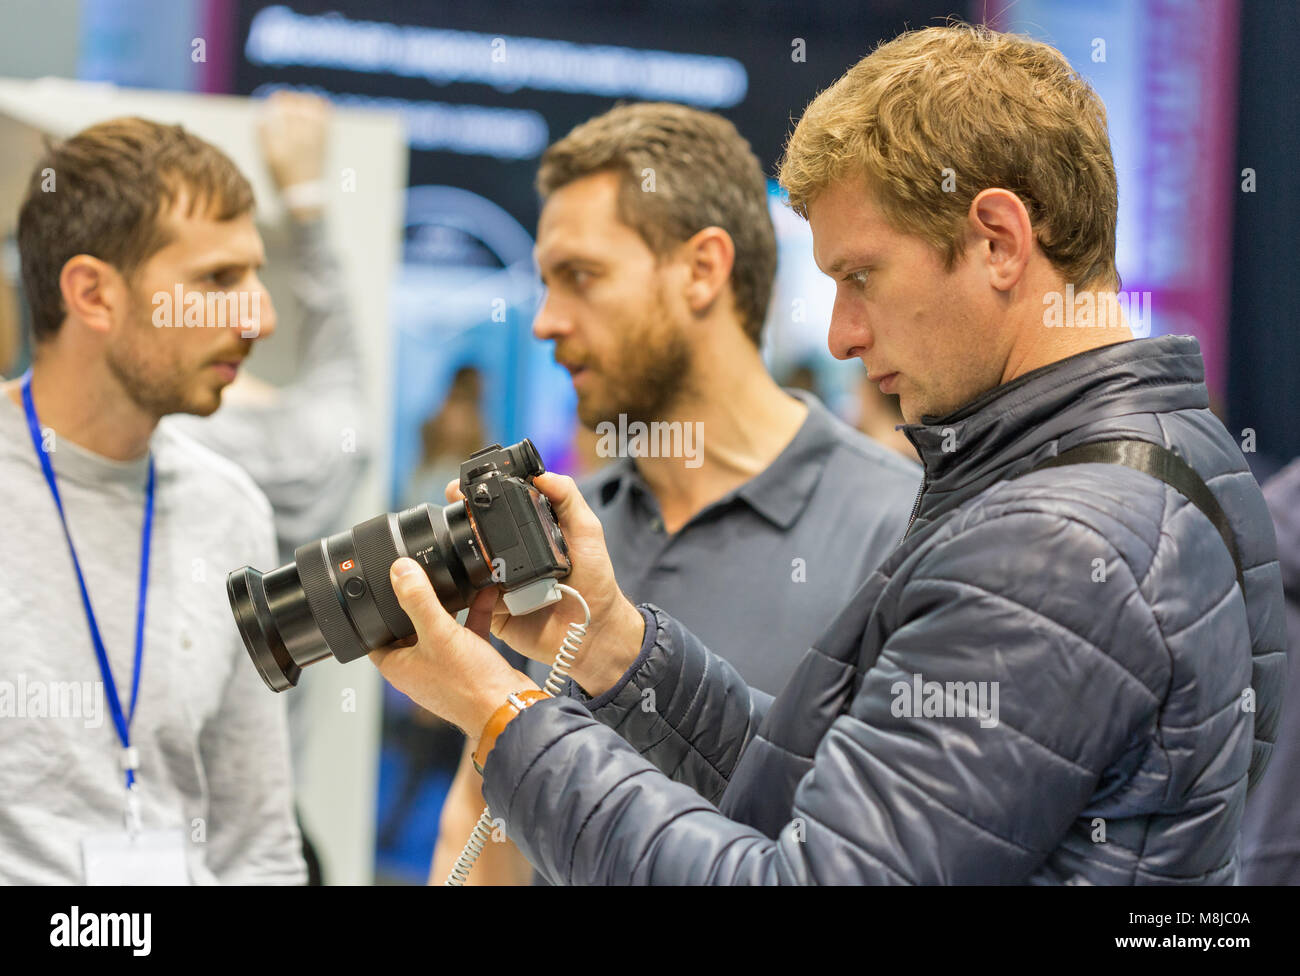 KIEV, UCRAINA - Ottobre 08, 2017: persone prove macchine fotografiche professionali sulle società Sony stand durante la CEE 2017, il maggiore consumatore di elettro Foto Stock